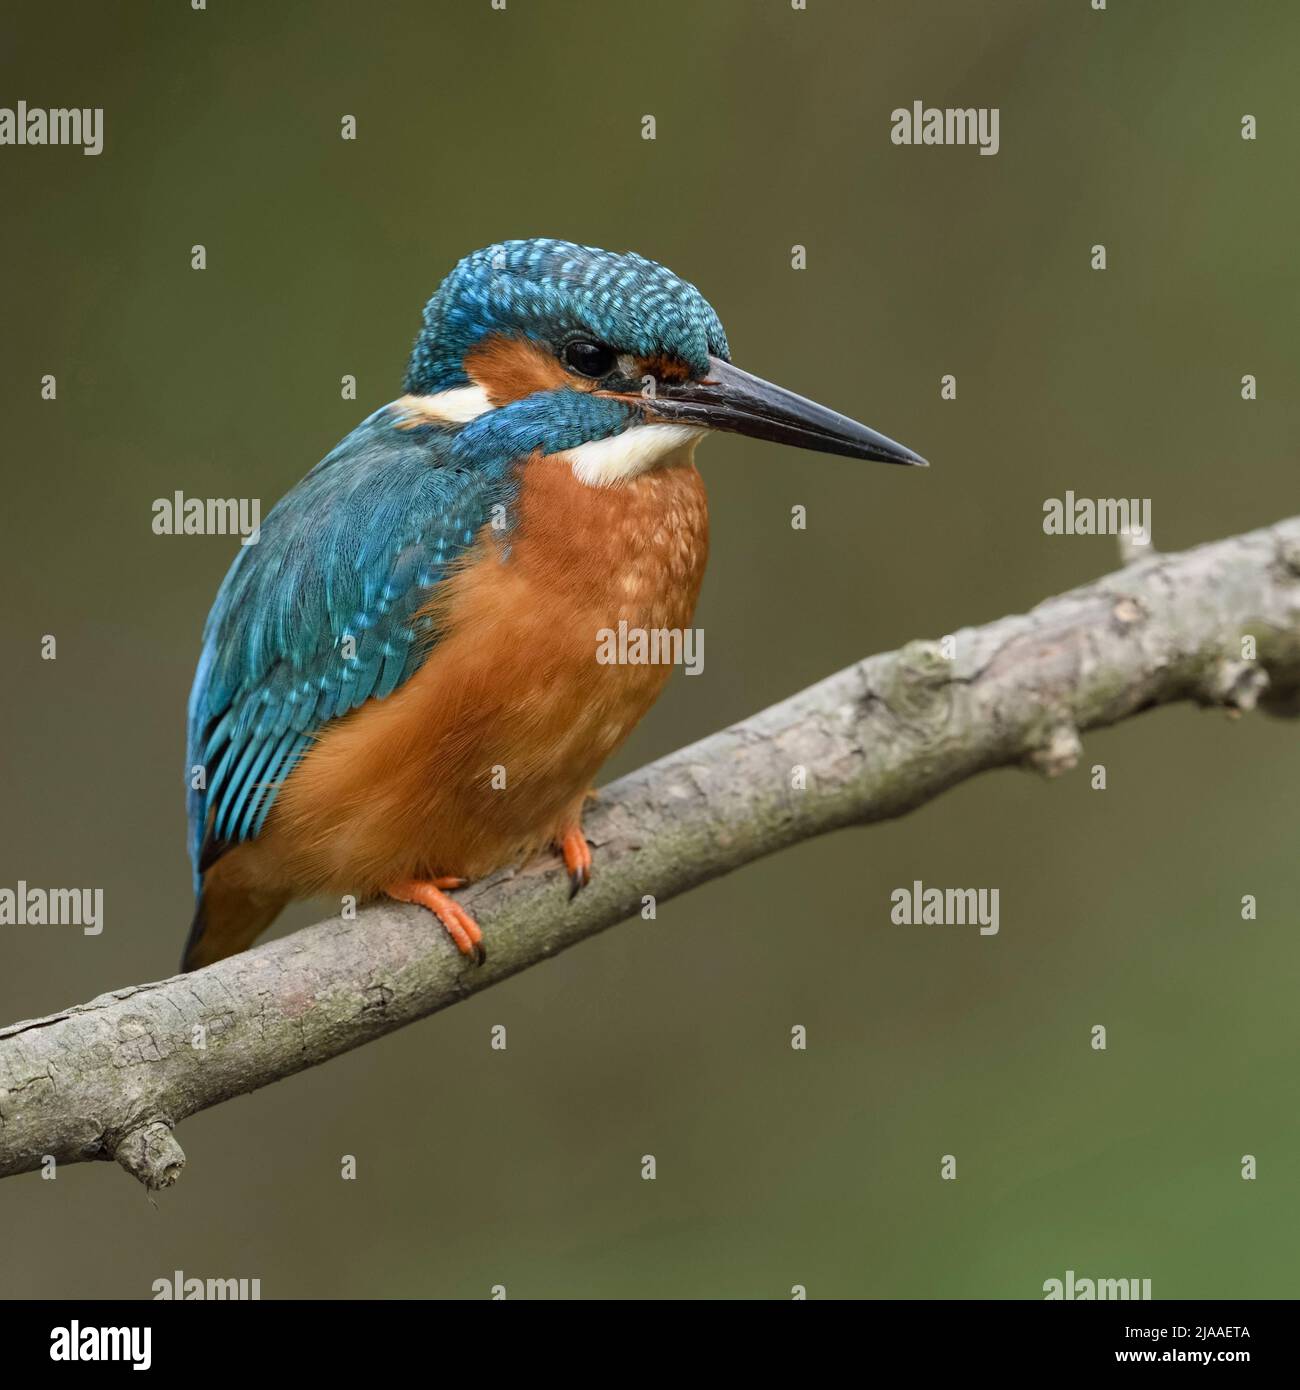 Kingfisher commun / Optimize ( Alcedo atthis ), homme au printemps, perché sur une branche au-dessus de la rivière, le close-up détaillé, de la faune, de l'Europe. Banque D'Images